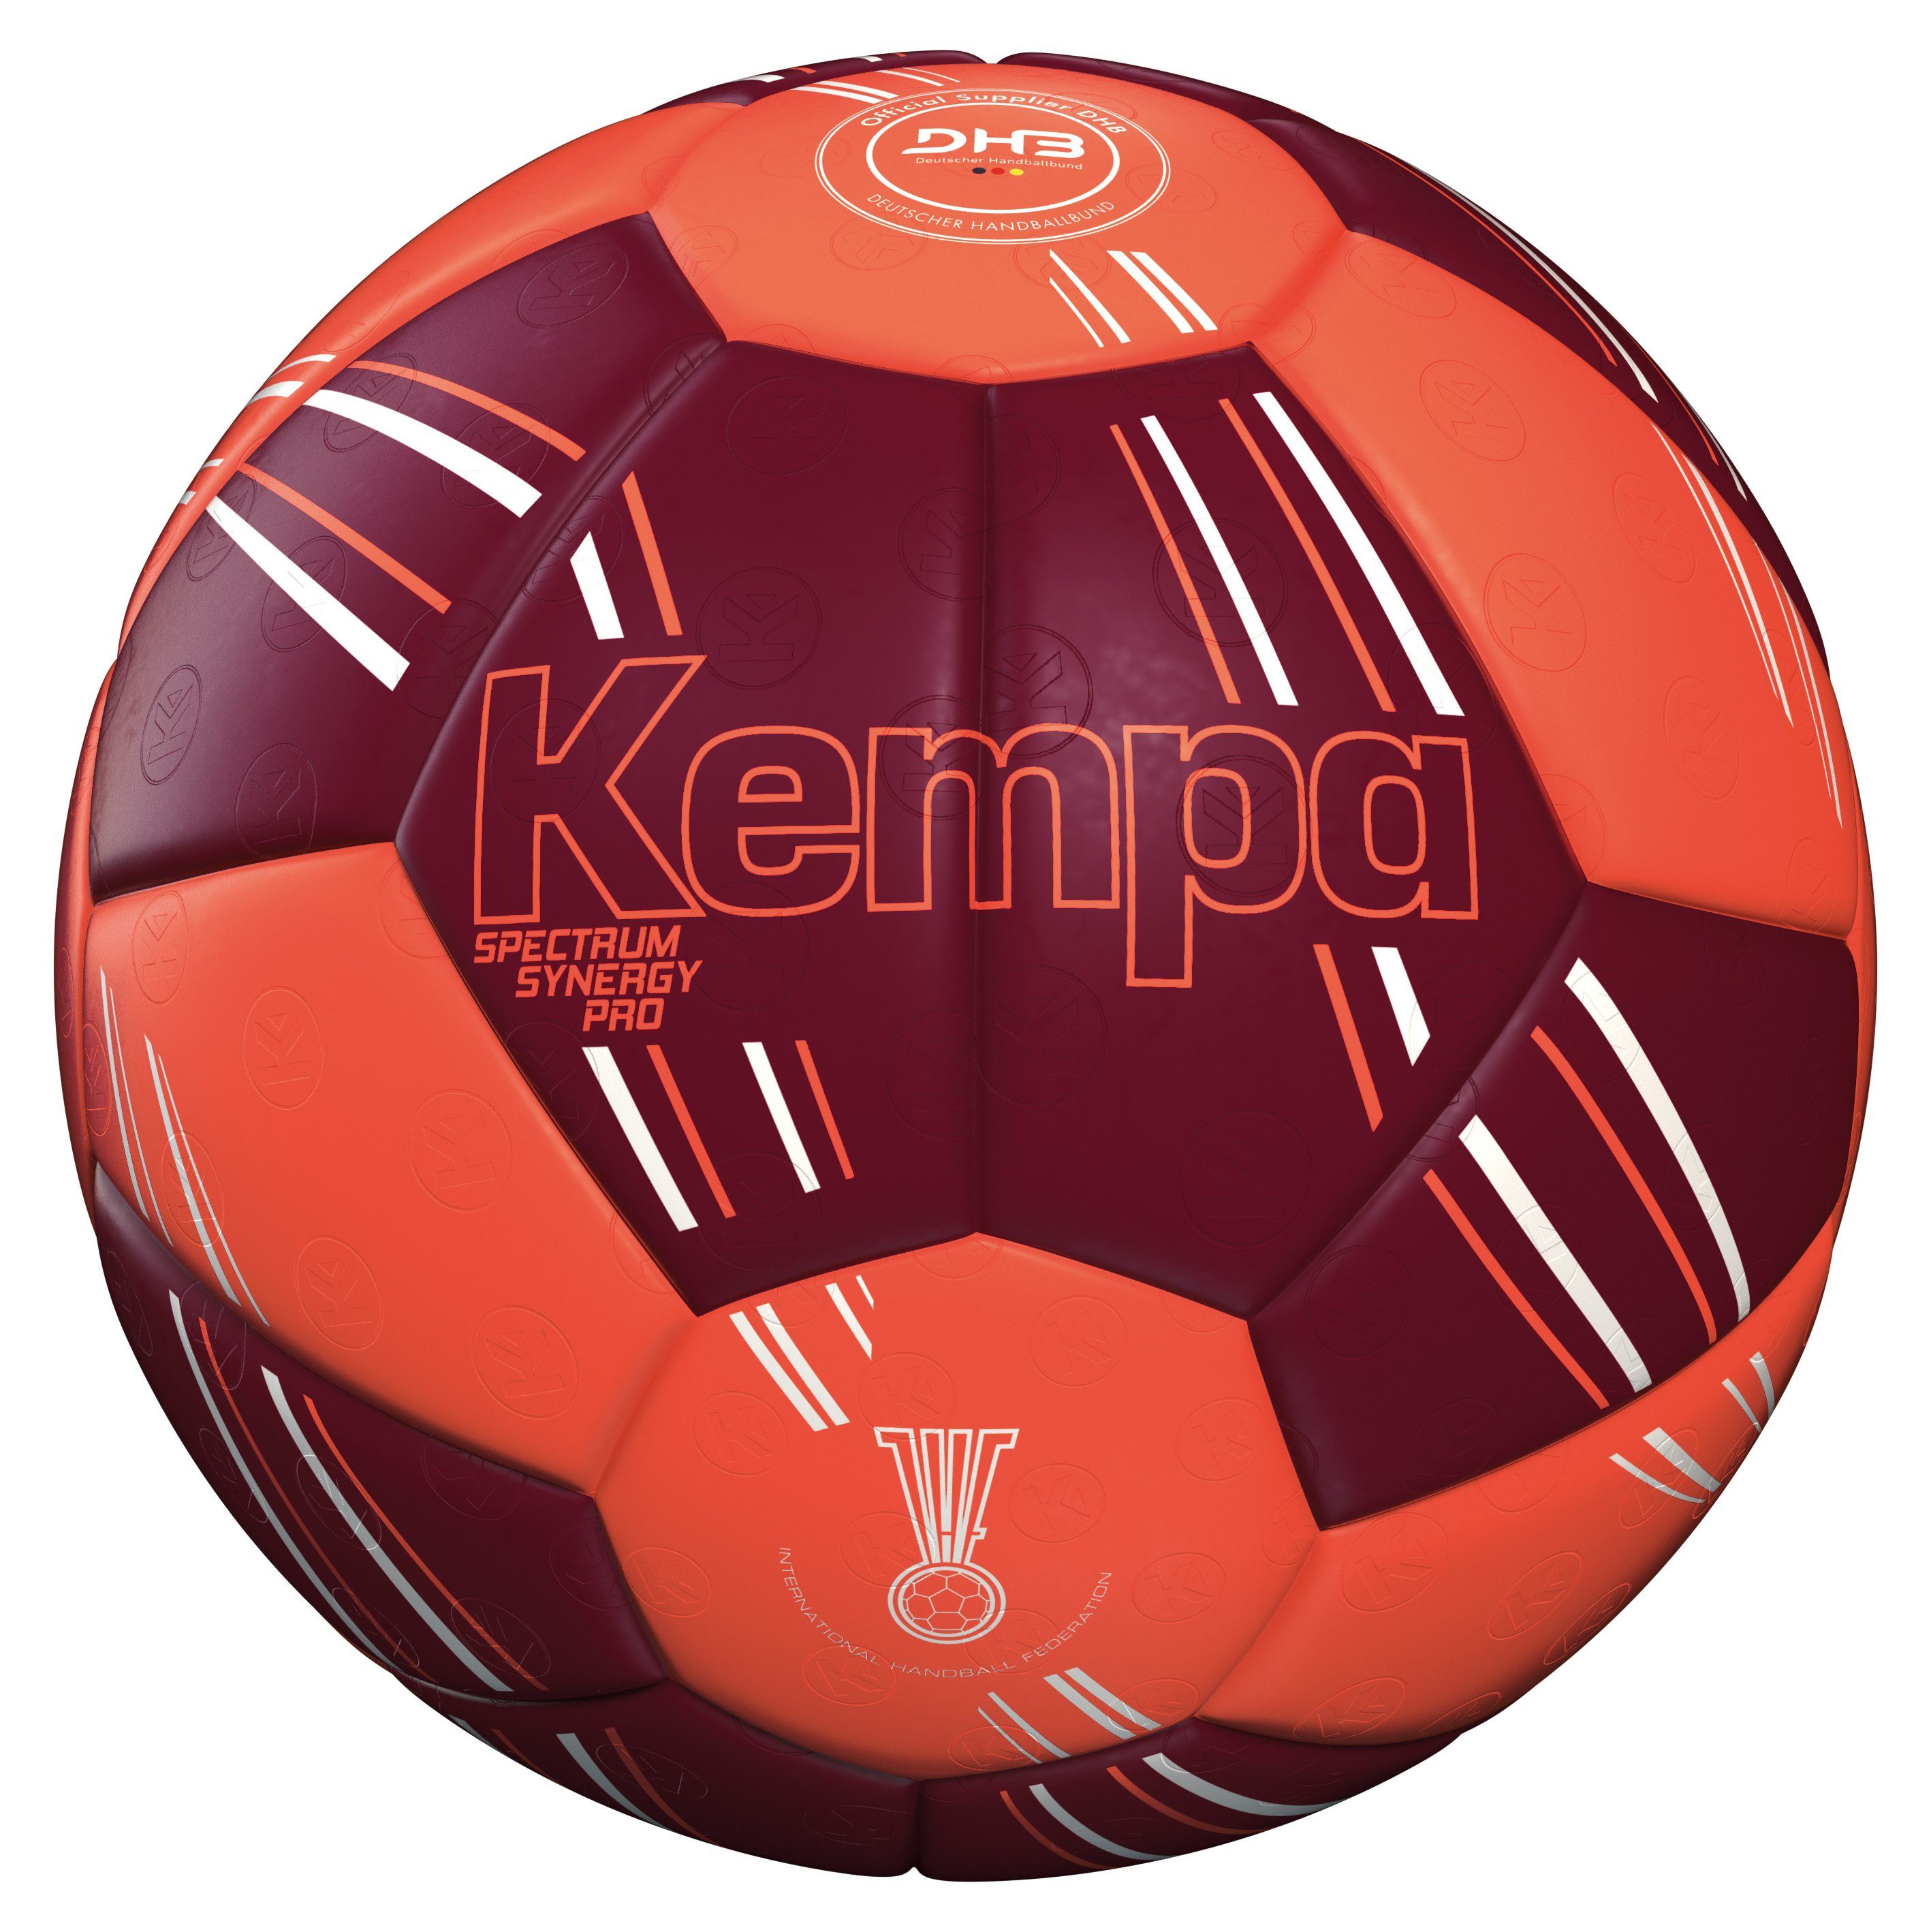 Kempa Handball Kempa SPECTRUM SYNERGY Handball PRO